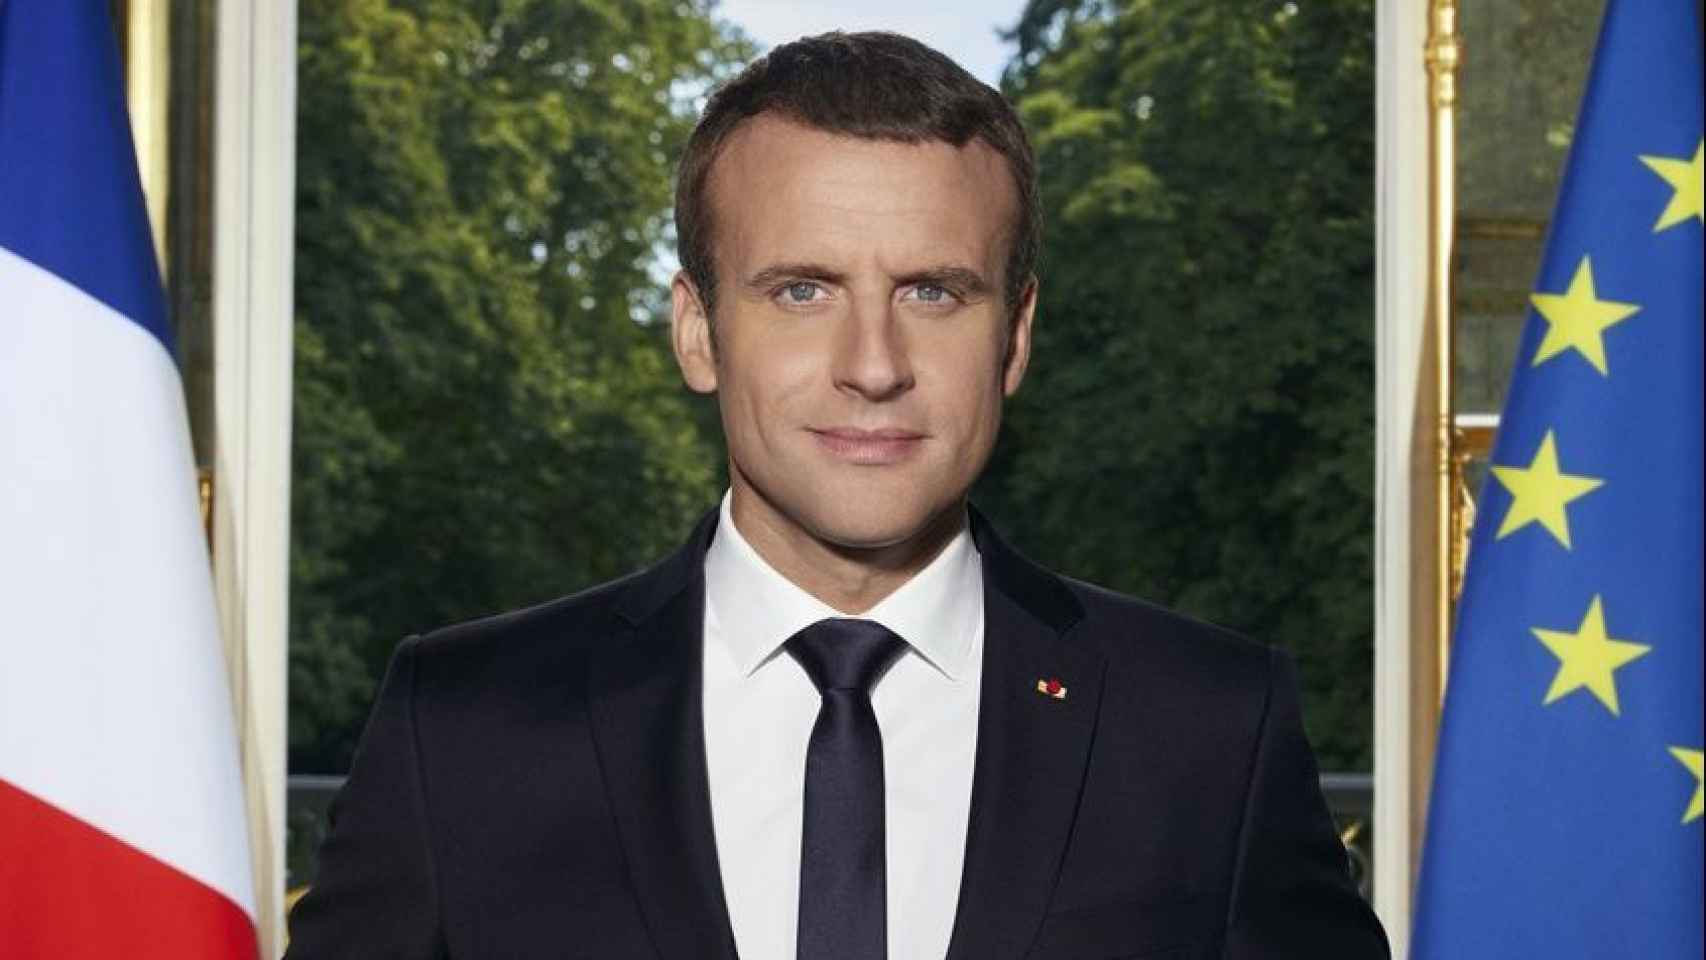 Fotografía oficial de Macron mostrada en la exposición.